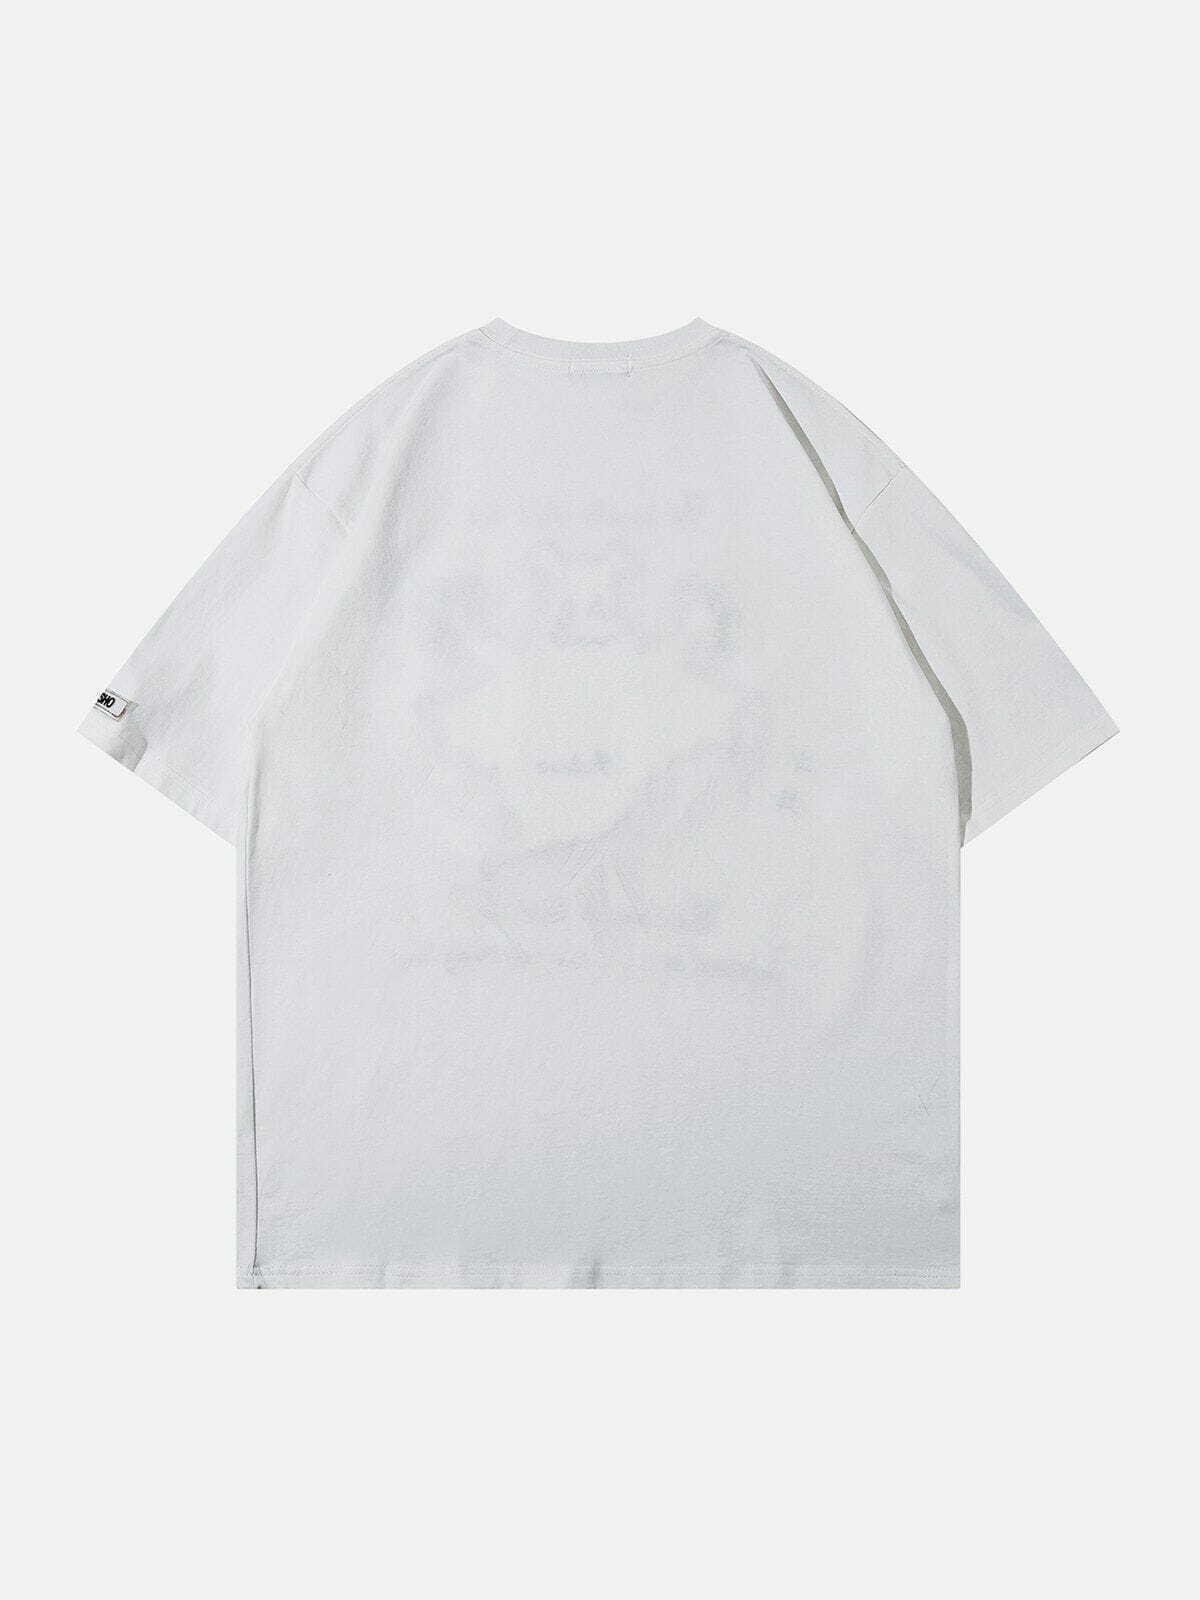 ghost print tee edgy & vintage streetwear 2536